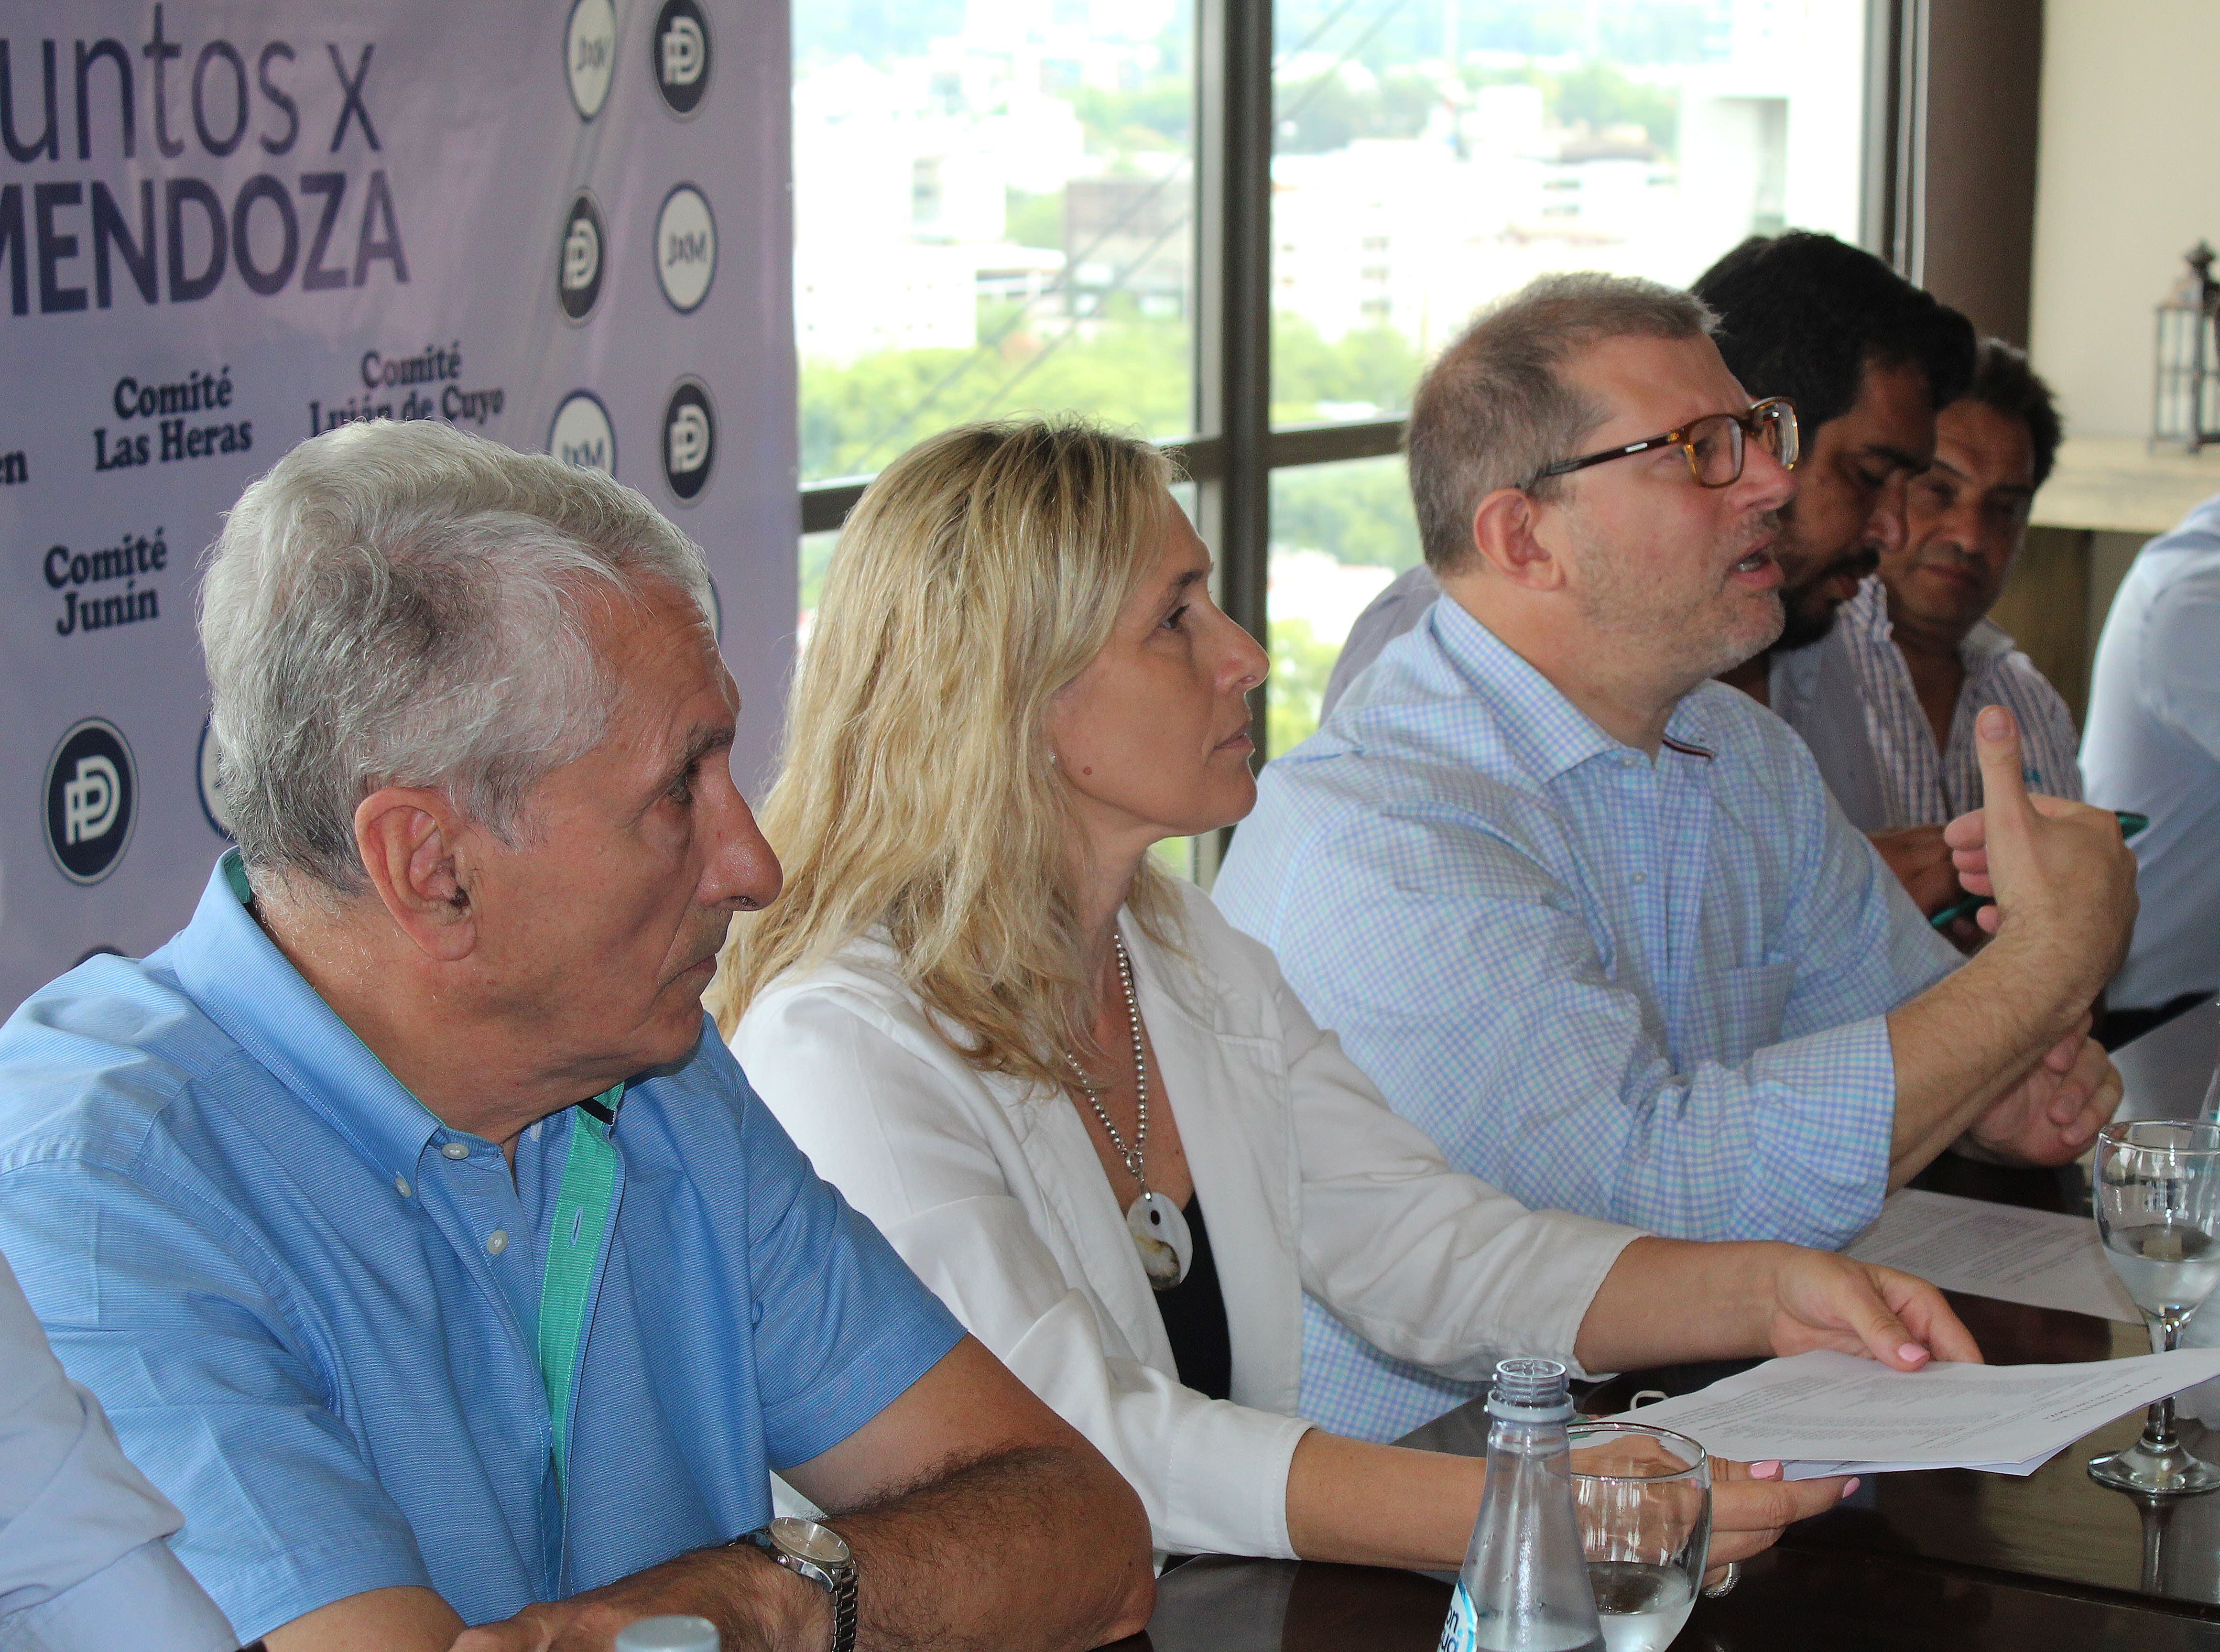 Presentaron Juntos X Mendoza, la coalición encabezada por el diputado Guillermo Mosso que busca unir al PD y a Cambia Mendoza.